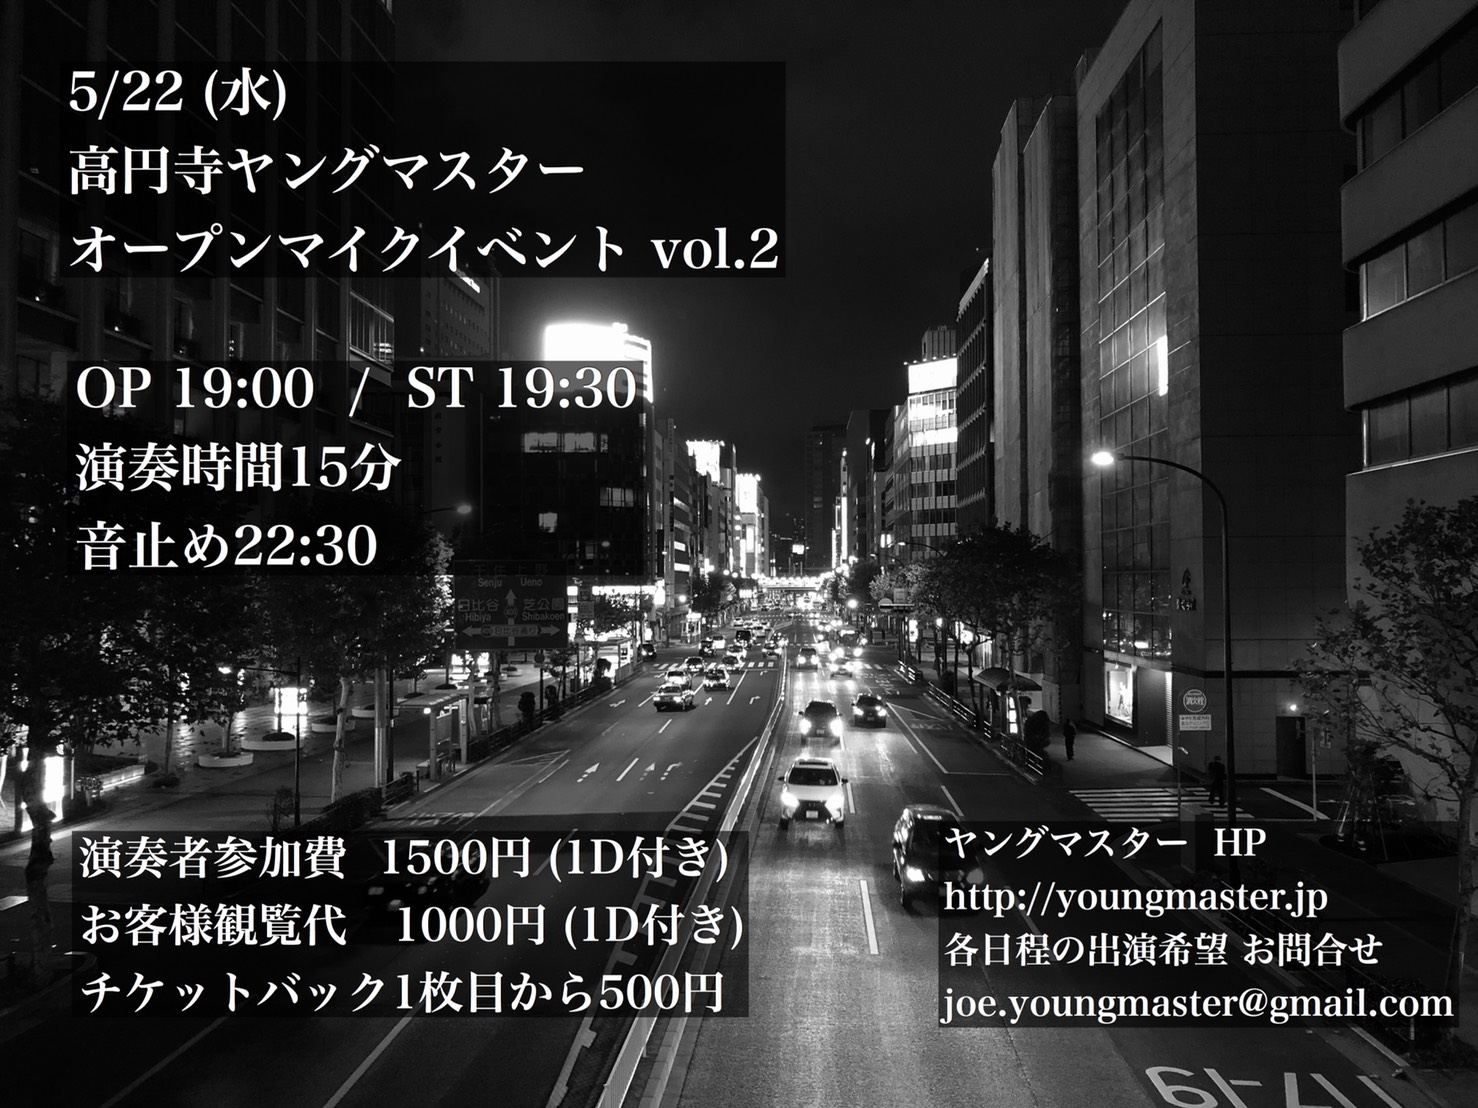 5/22 (水)高円寺ヤングマスター オープンマイクイベントvol.2